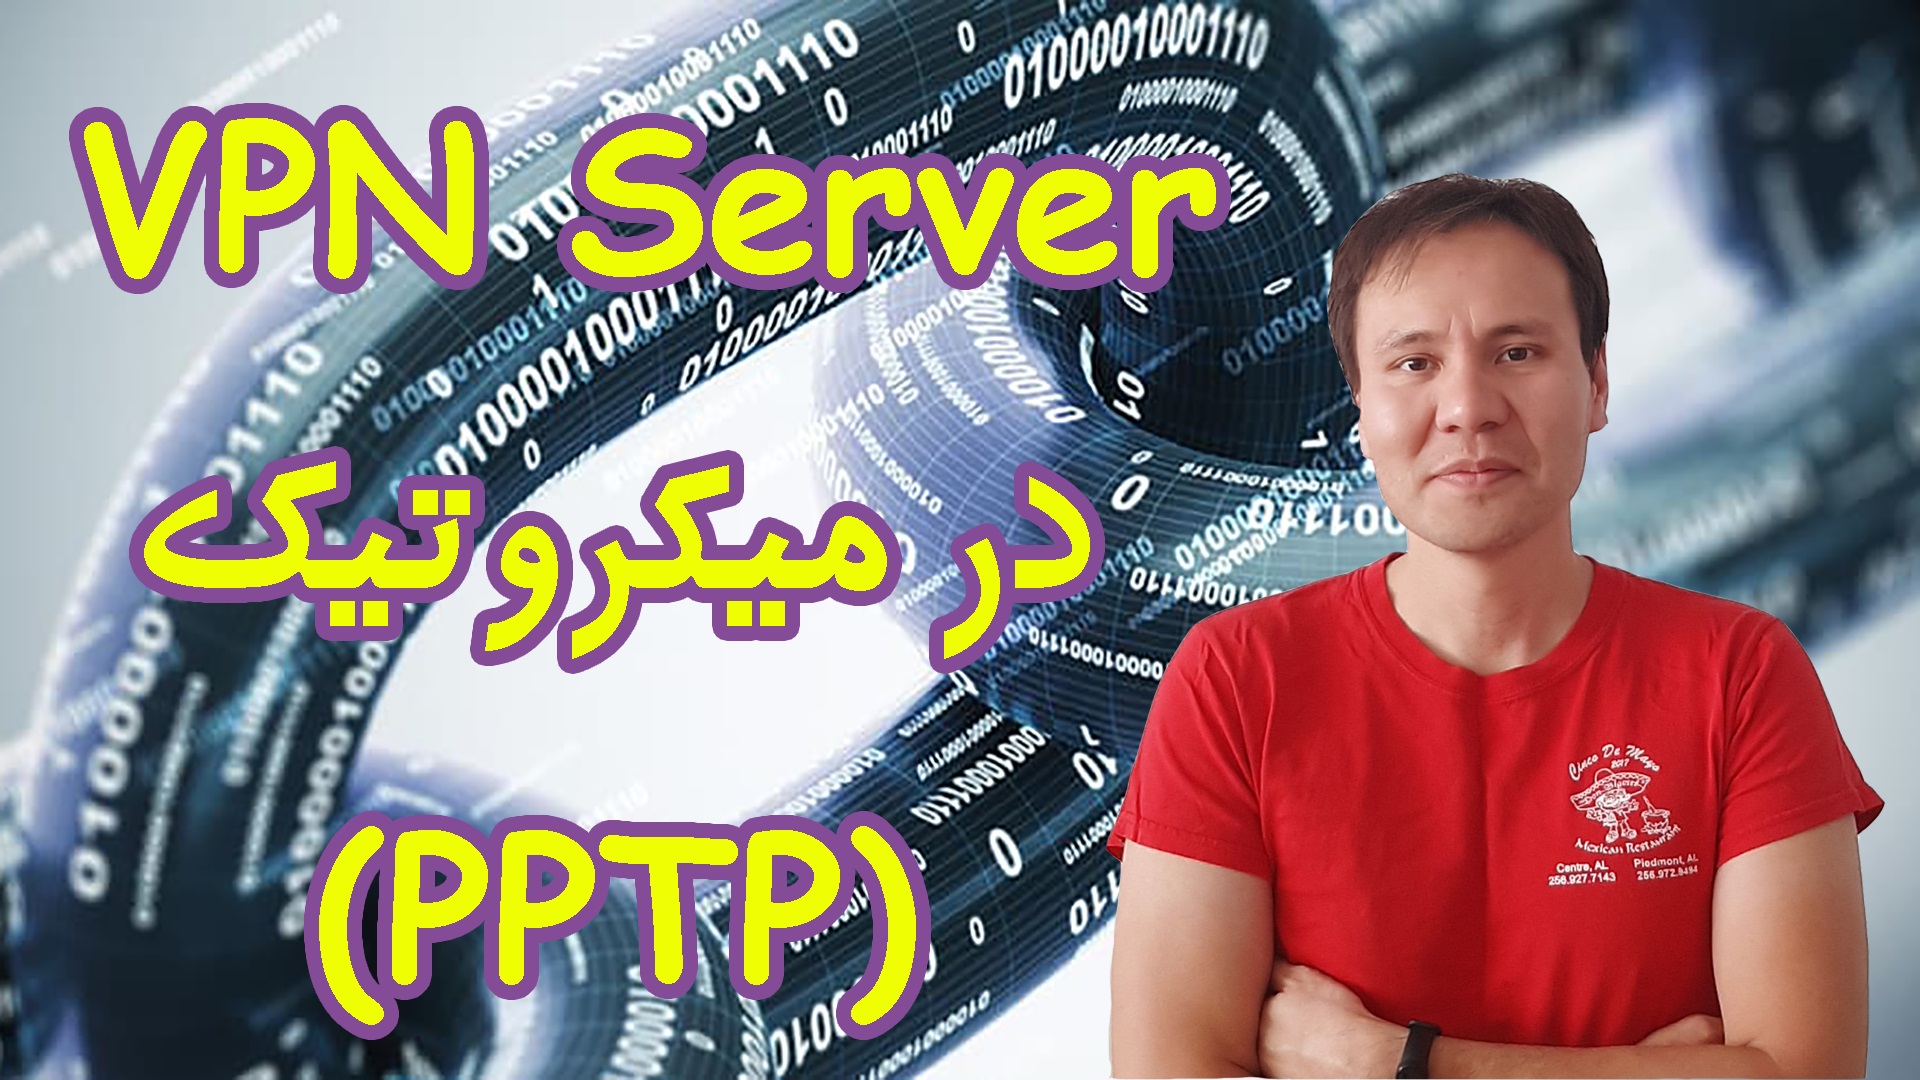 35- VPN سرور در میکروتیک (PPTP Server)